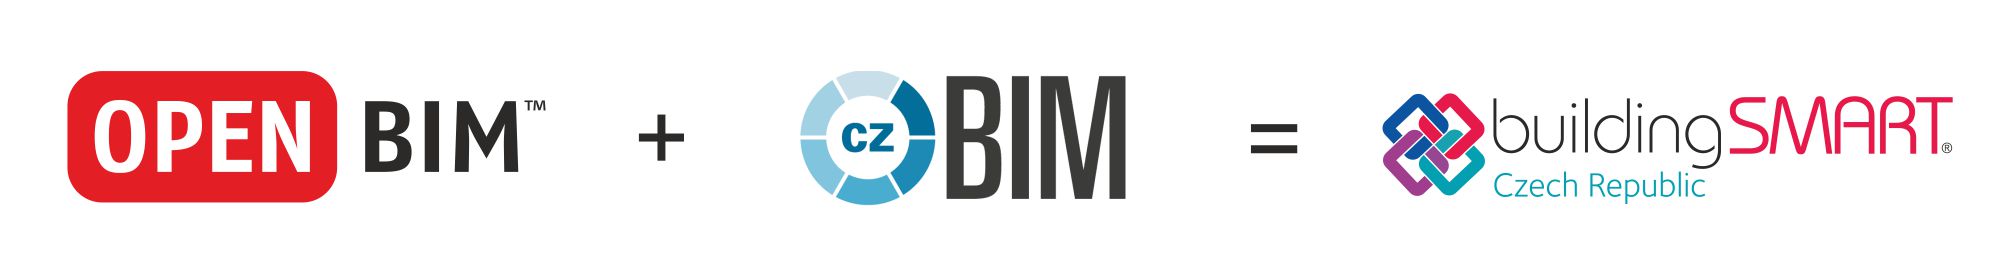 opeBIM+czBIM_bSCZ_logo-krivky